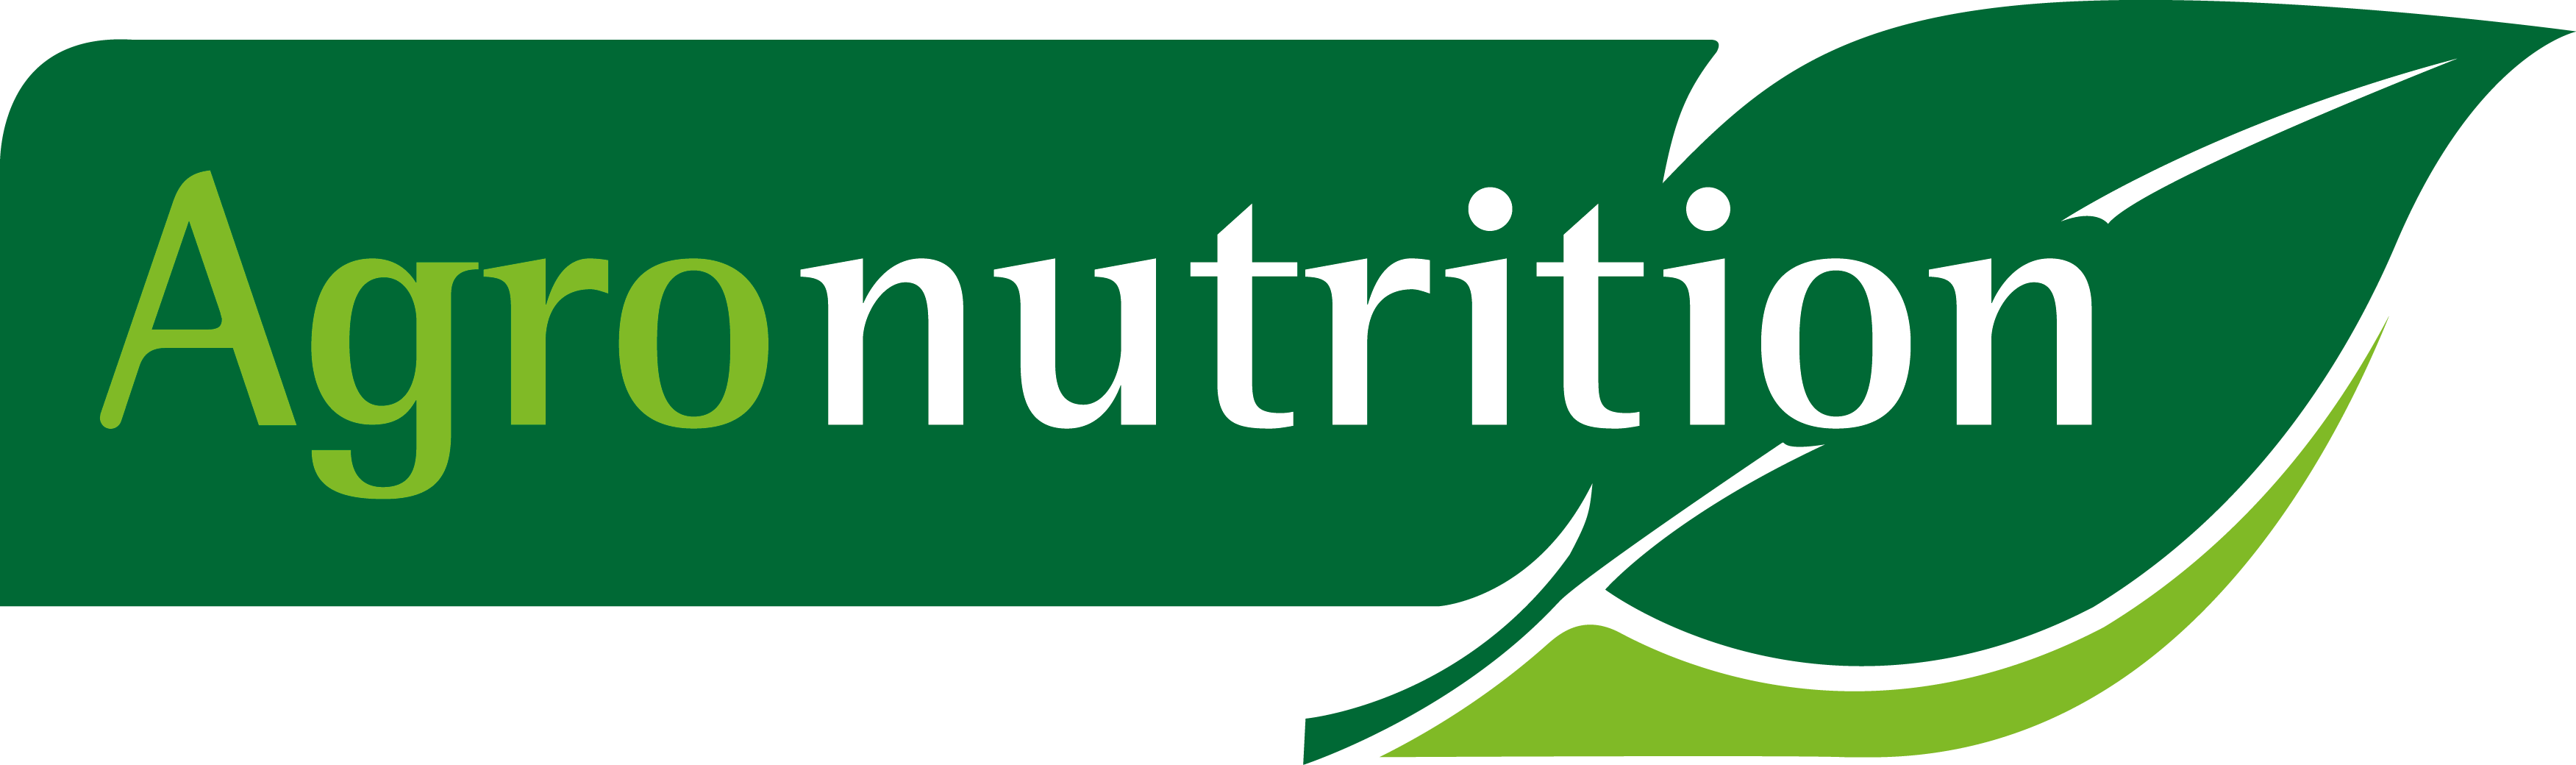 Agronutrition